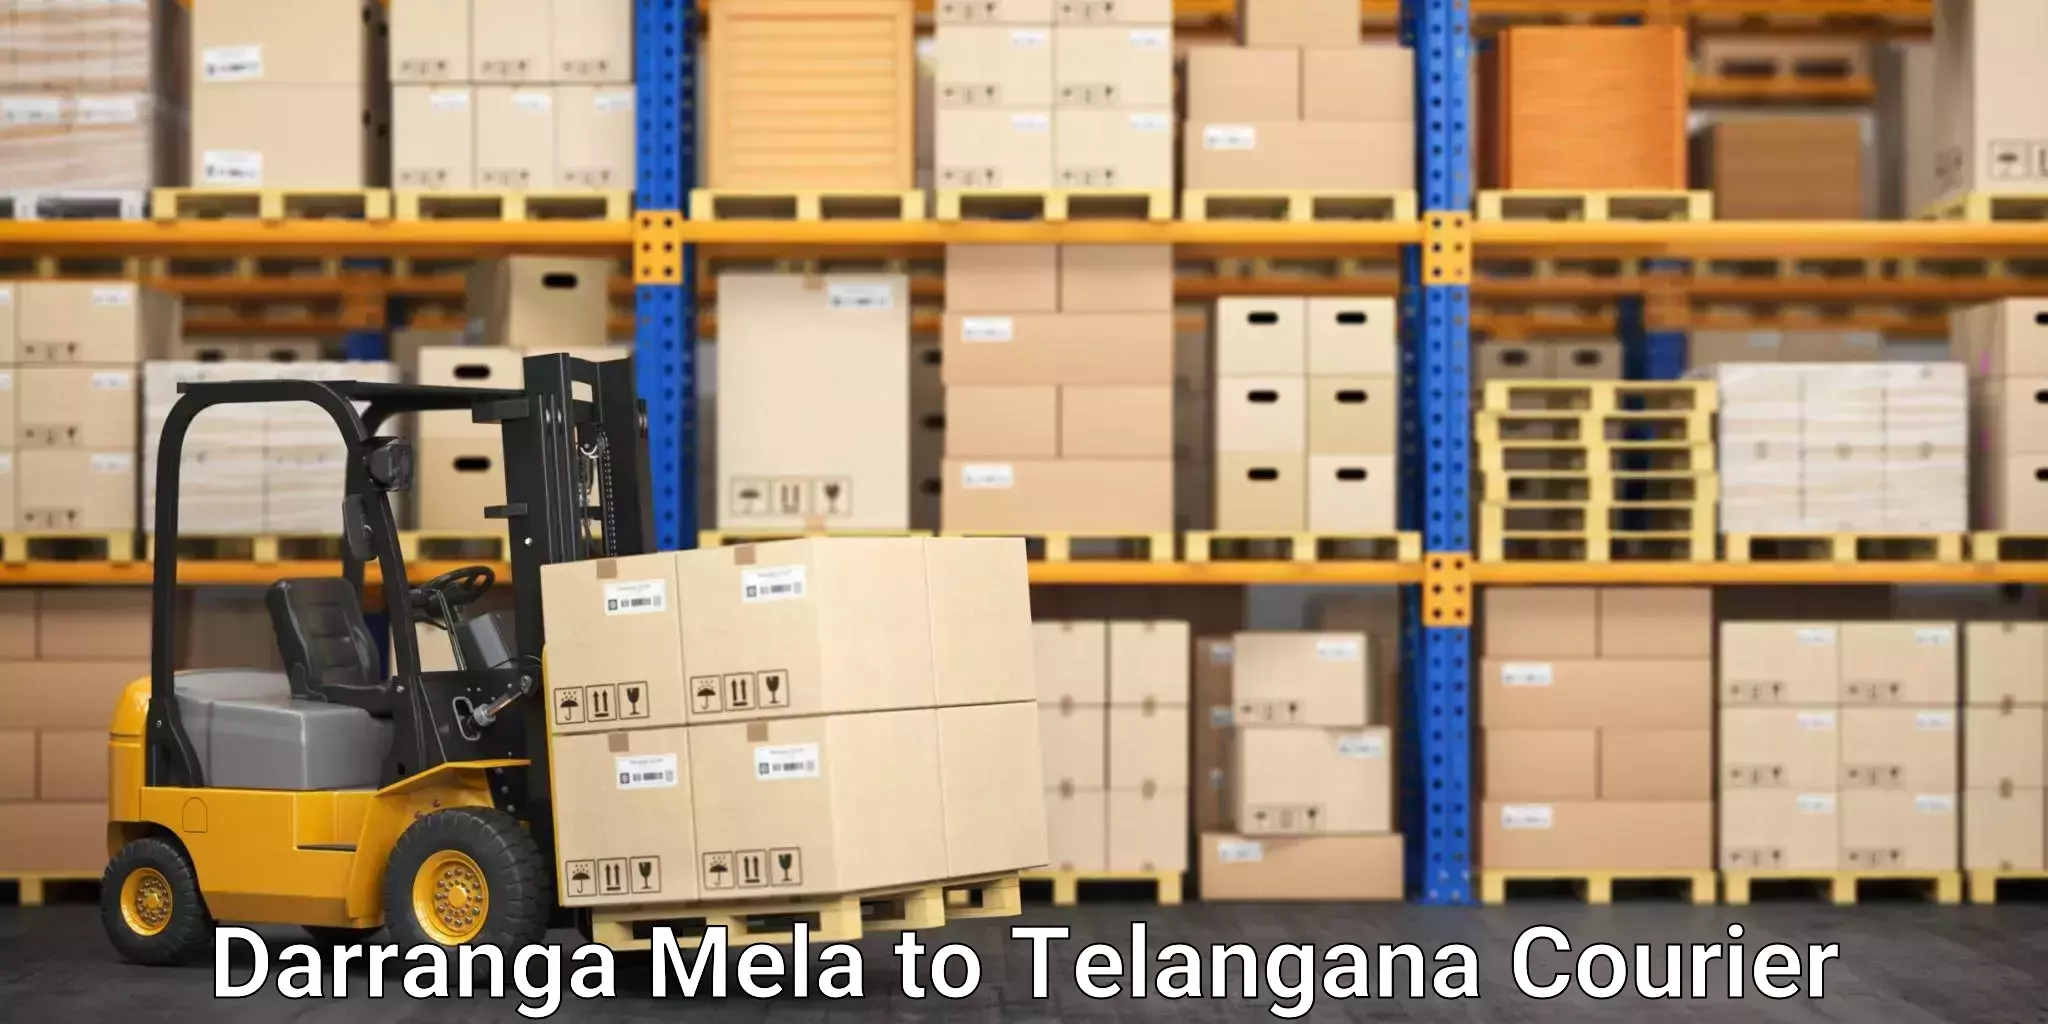 Cargo courier service Darranga Mela to Telangana